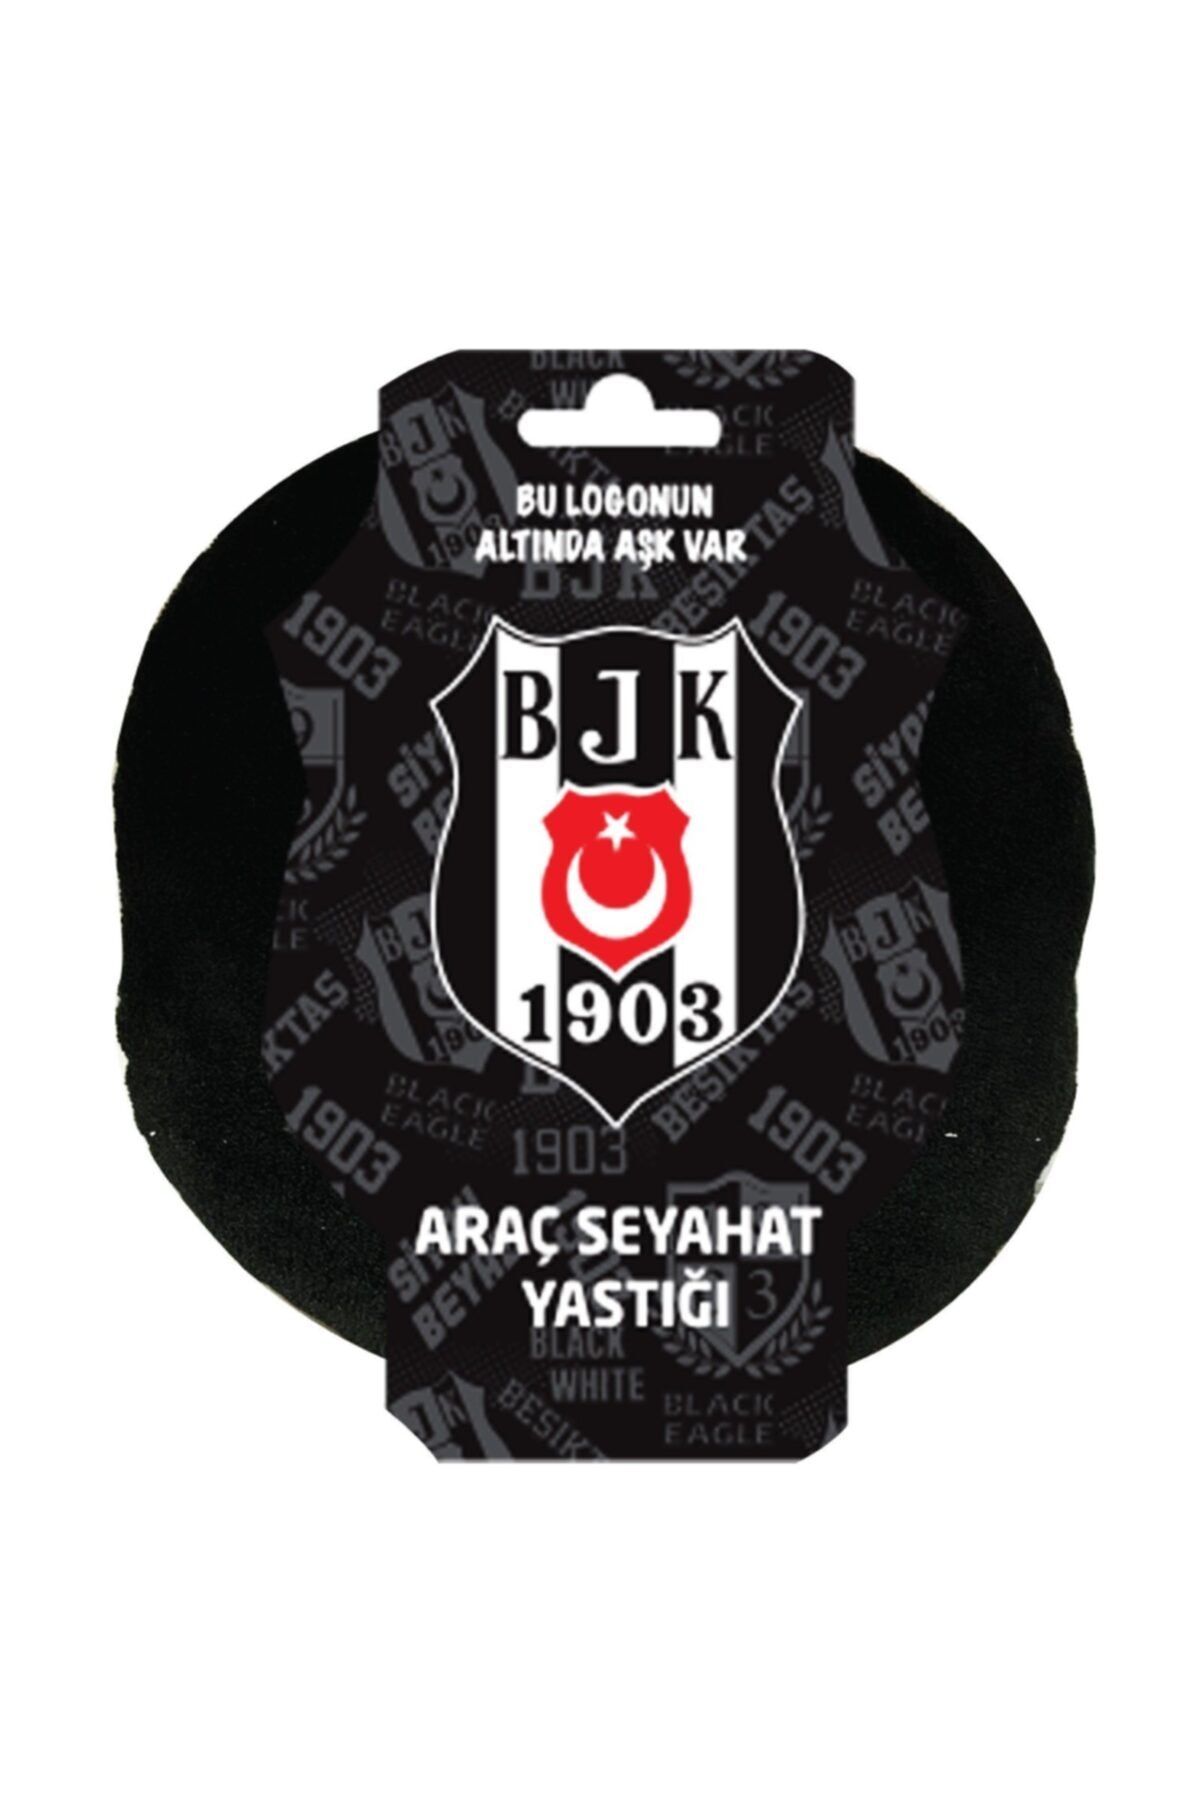 Beşiktaş Orjinal Lisanslı Araç Seyahat Yastığı - 1